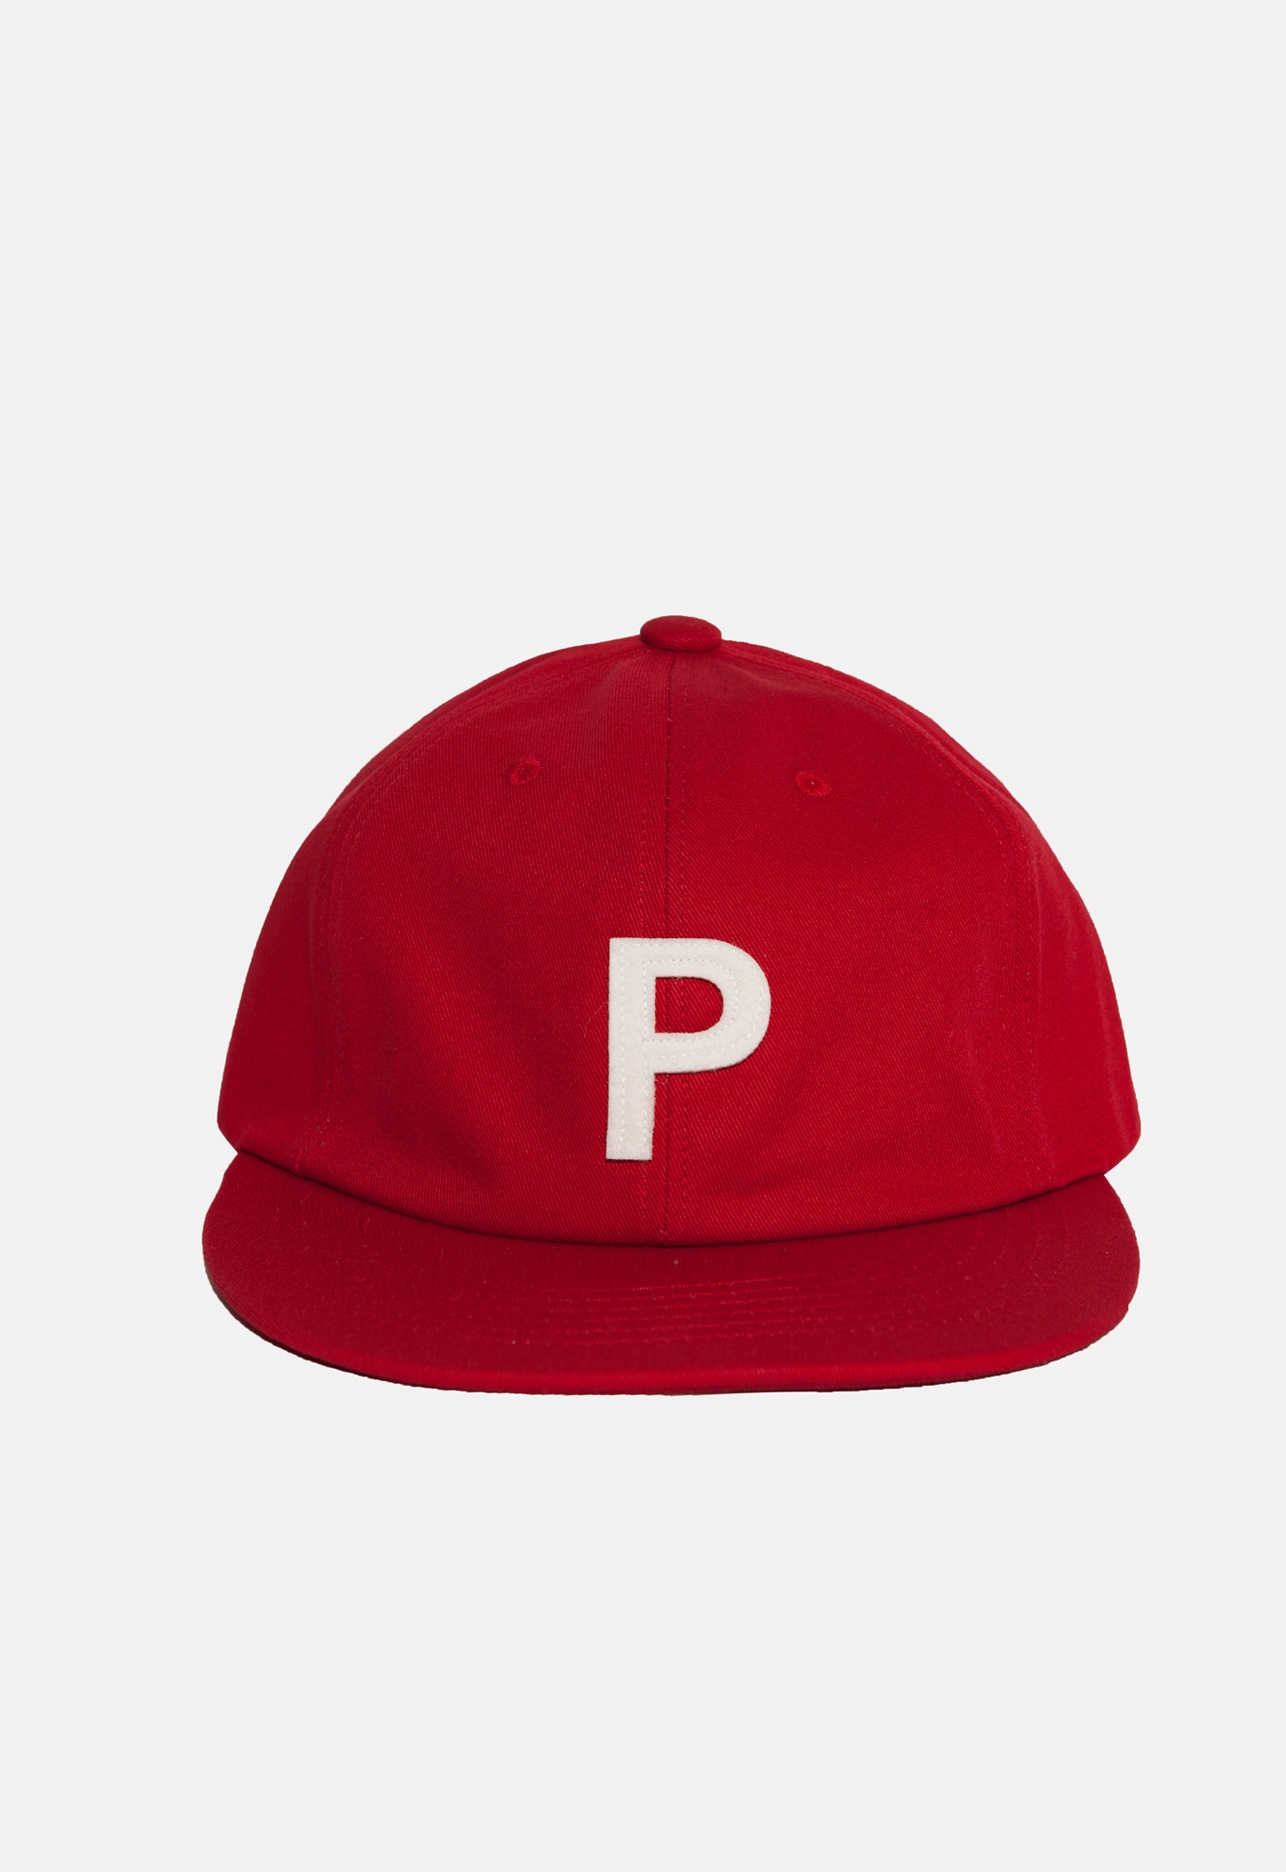 P CAP RED